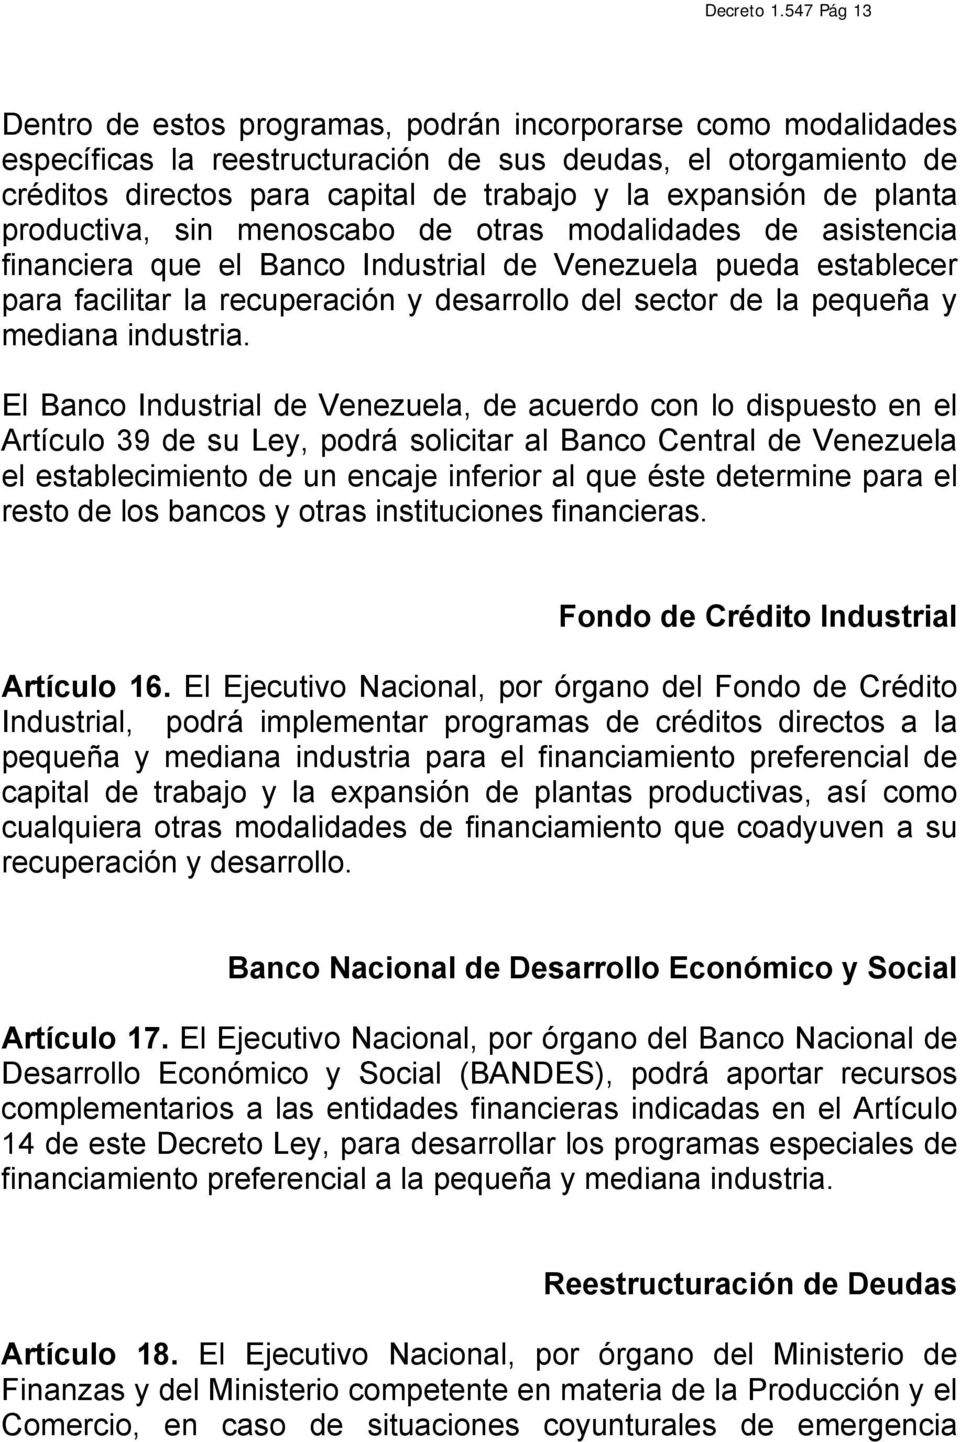 de planta productiva, sin menoscabo de otras modalidades de asistencia financiera que el Banco Industrial de Venezuela pueda establecer para facilitar la recuperación y desarrollo del sector de la